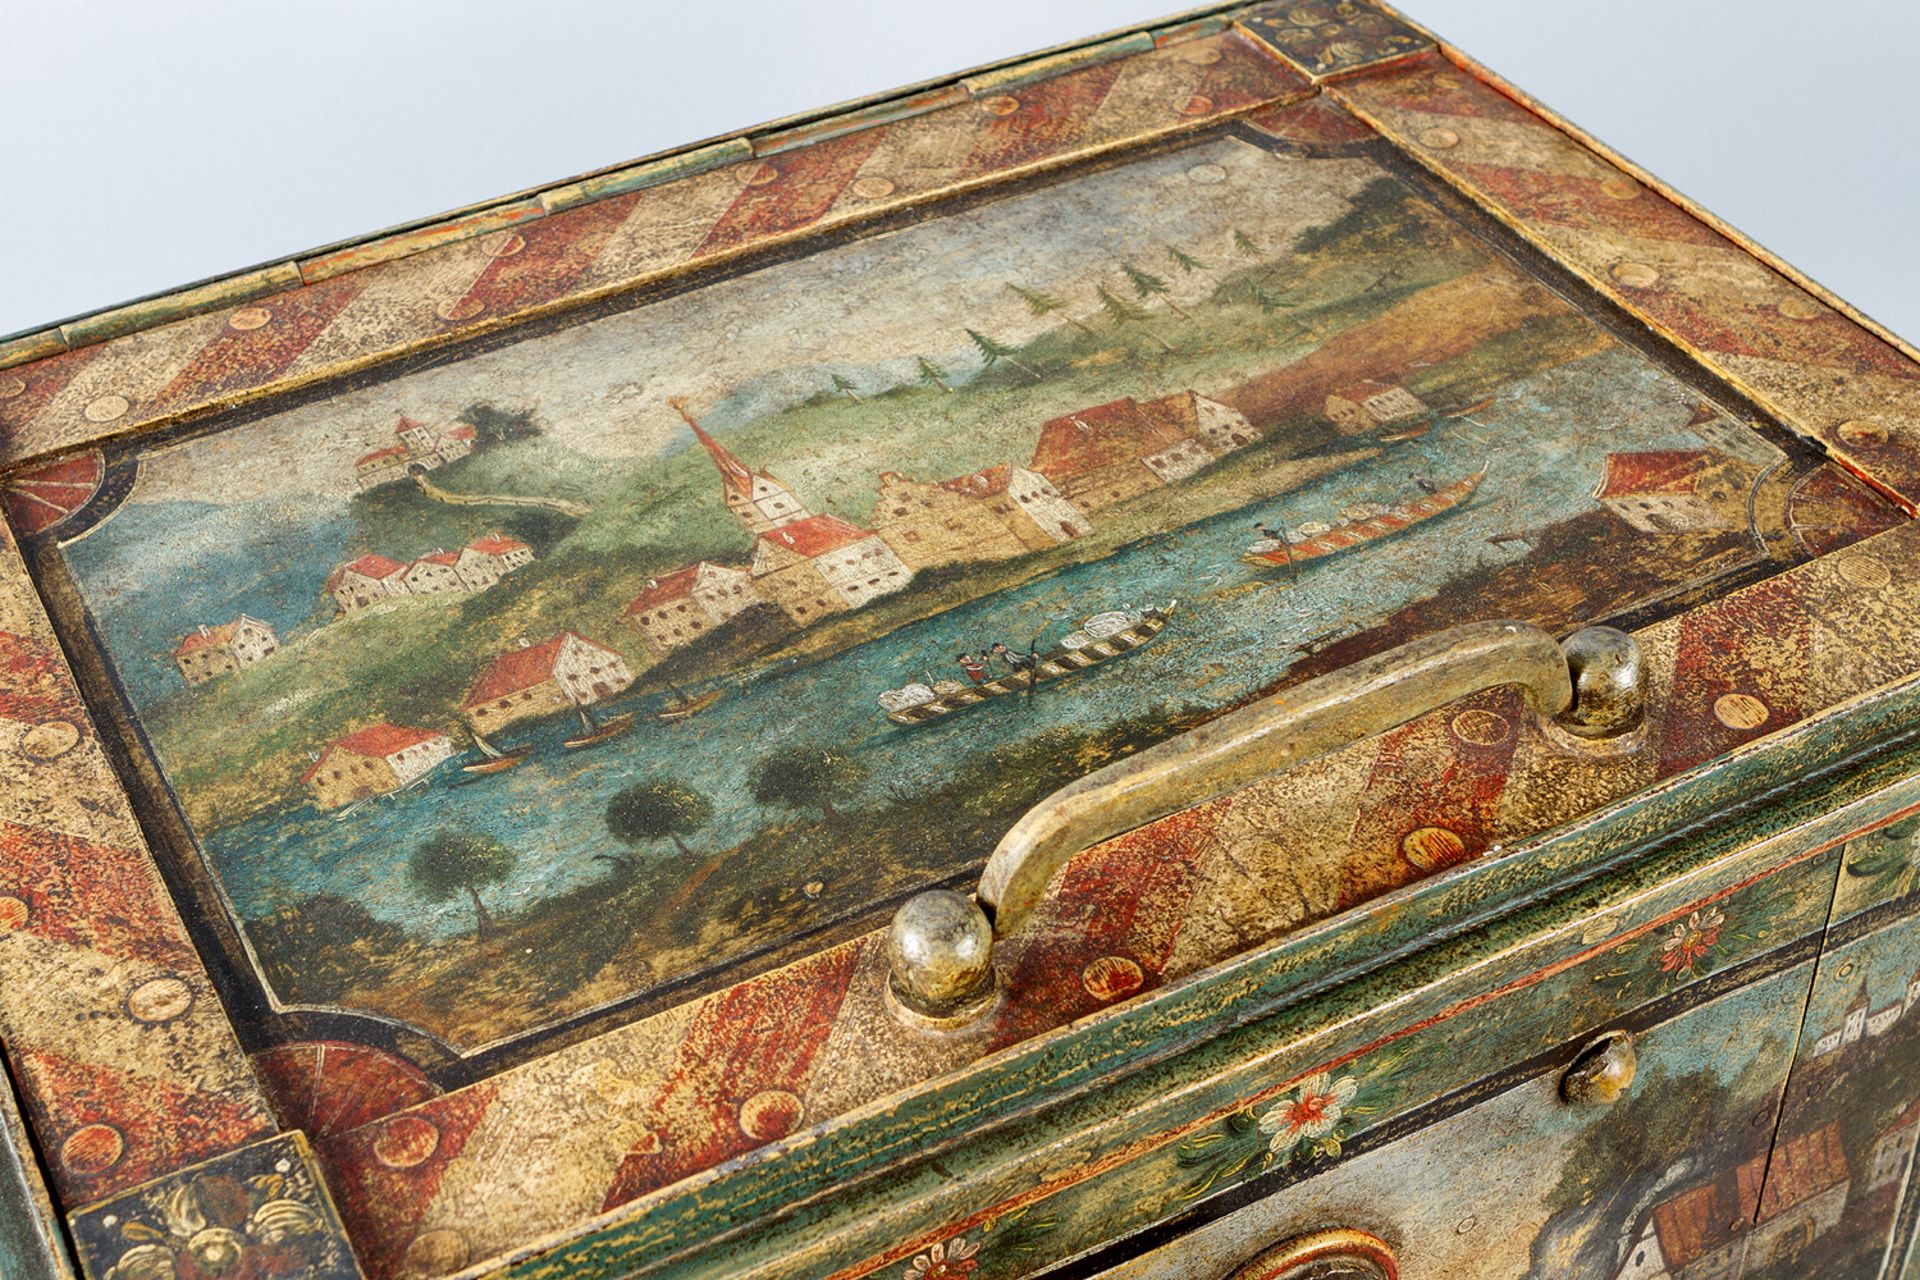 Salzburg iron safe casket - Image 2 of 3